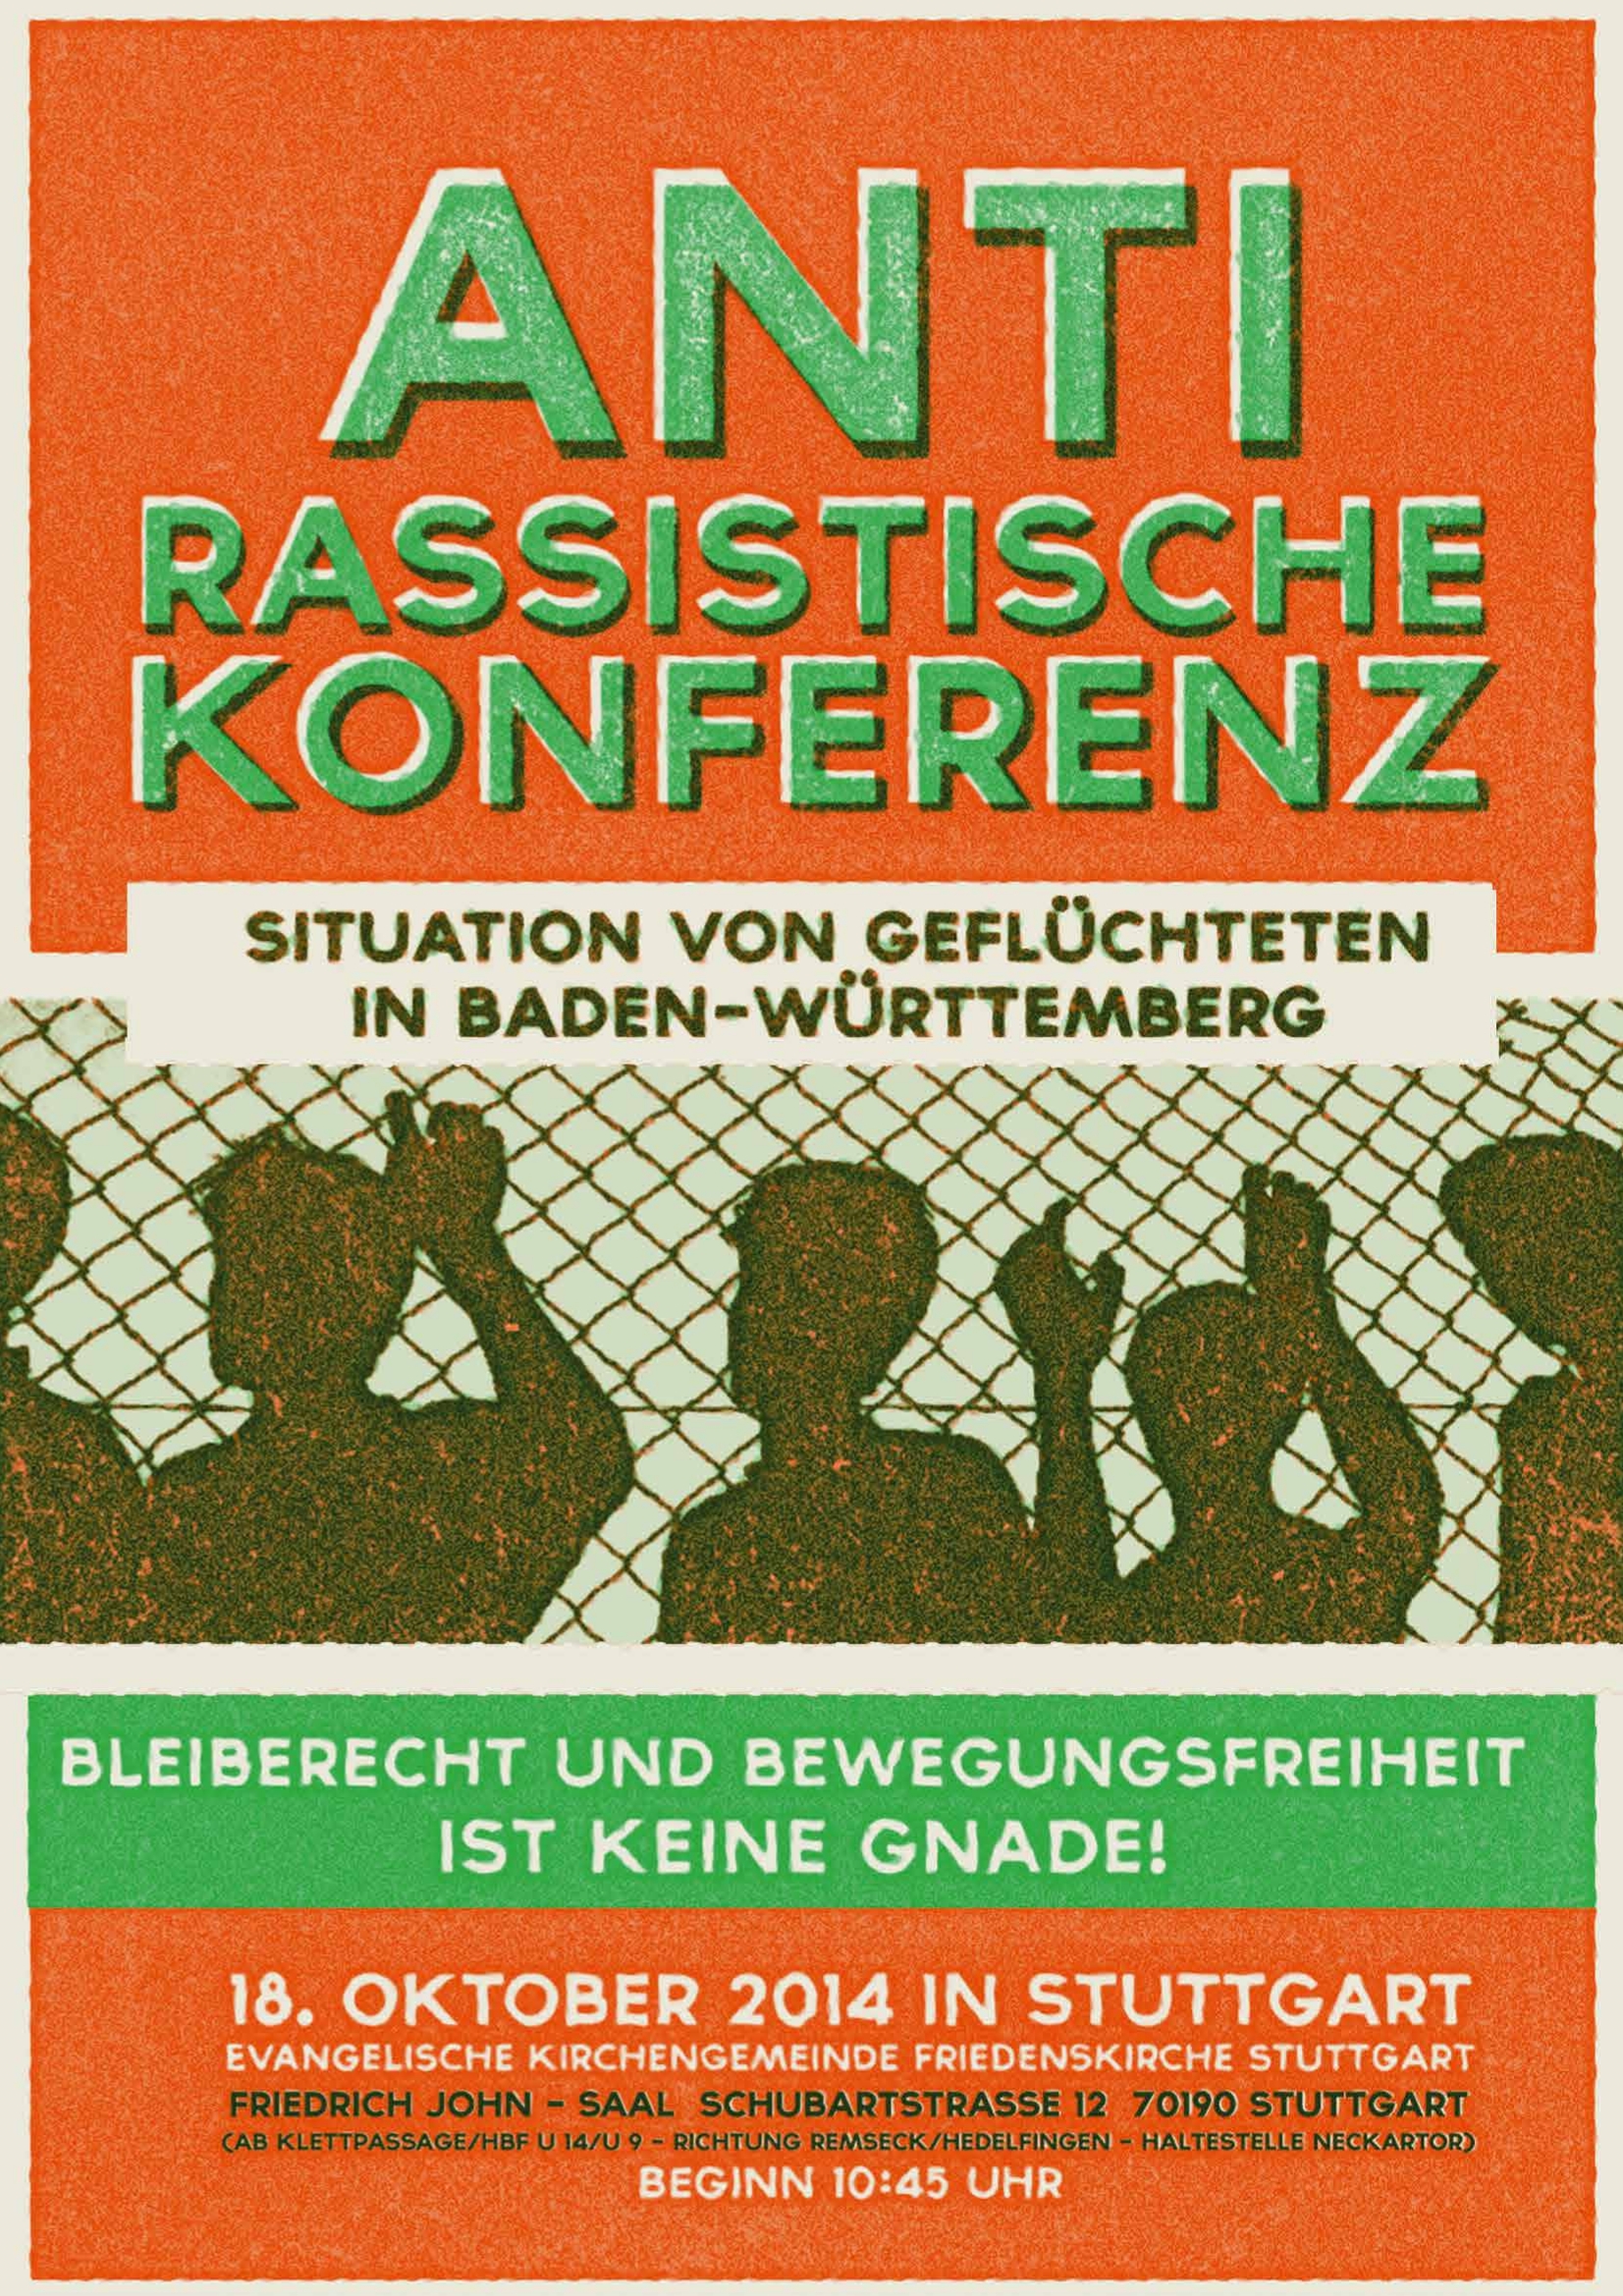 Antirassistische Konferenz in Stuttgart